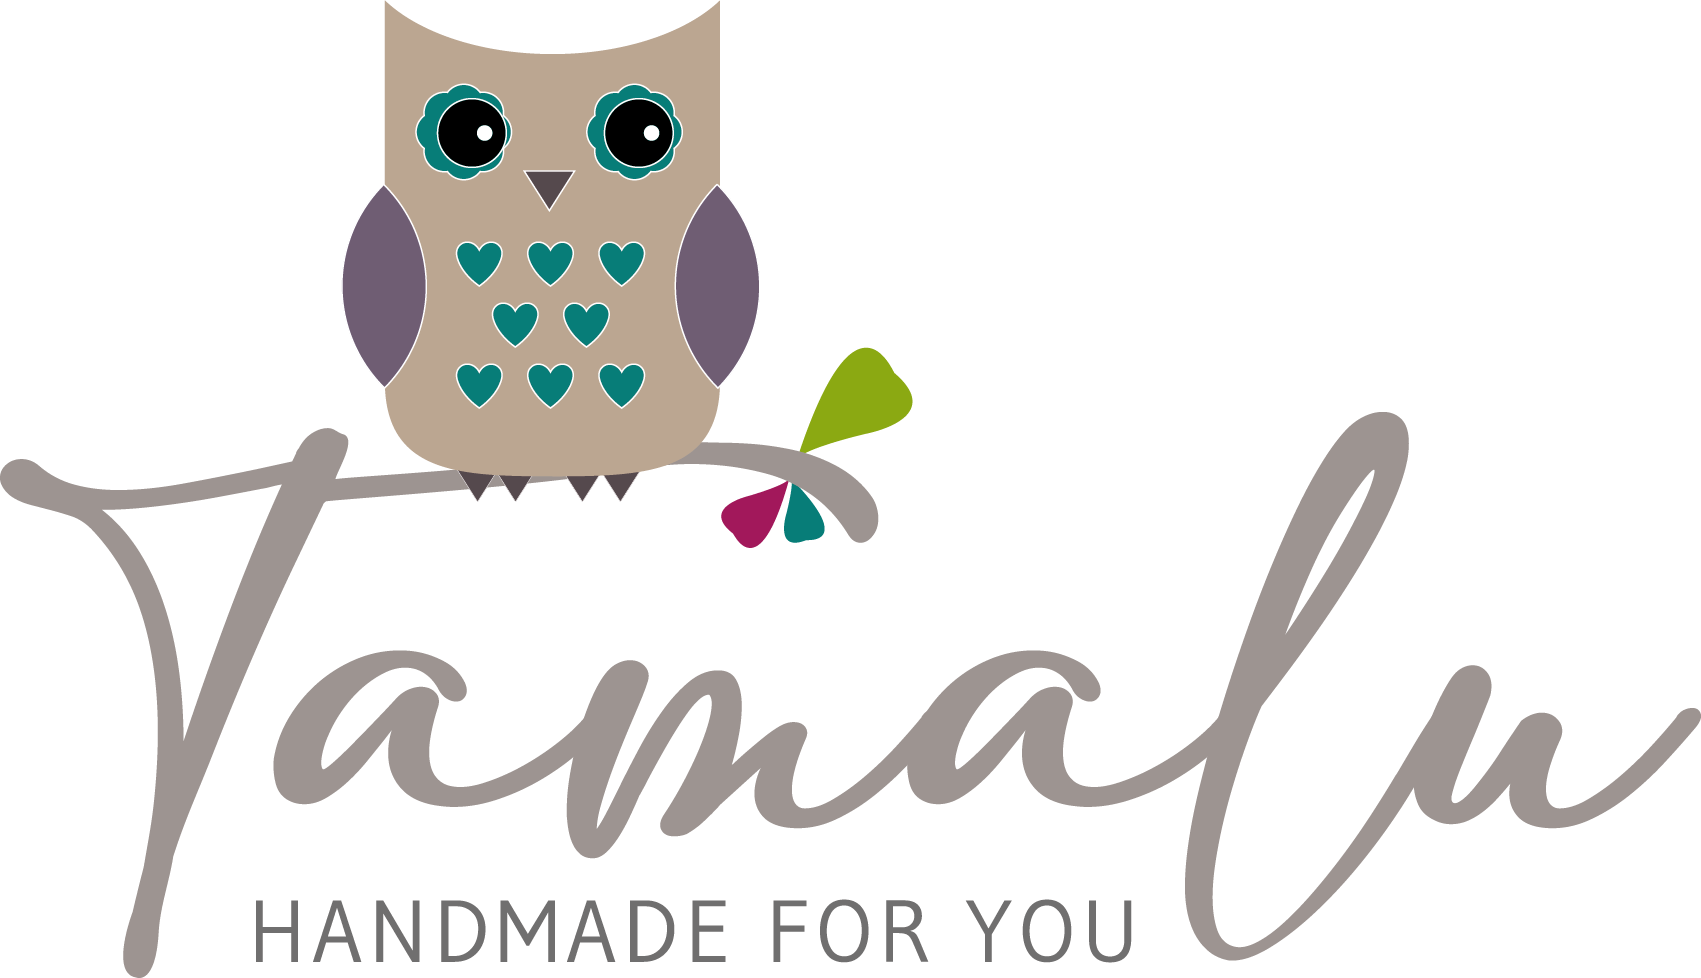 Tamalu - Handmade For You